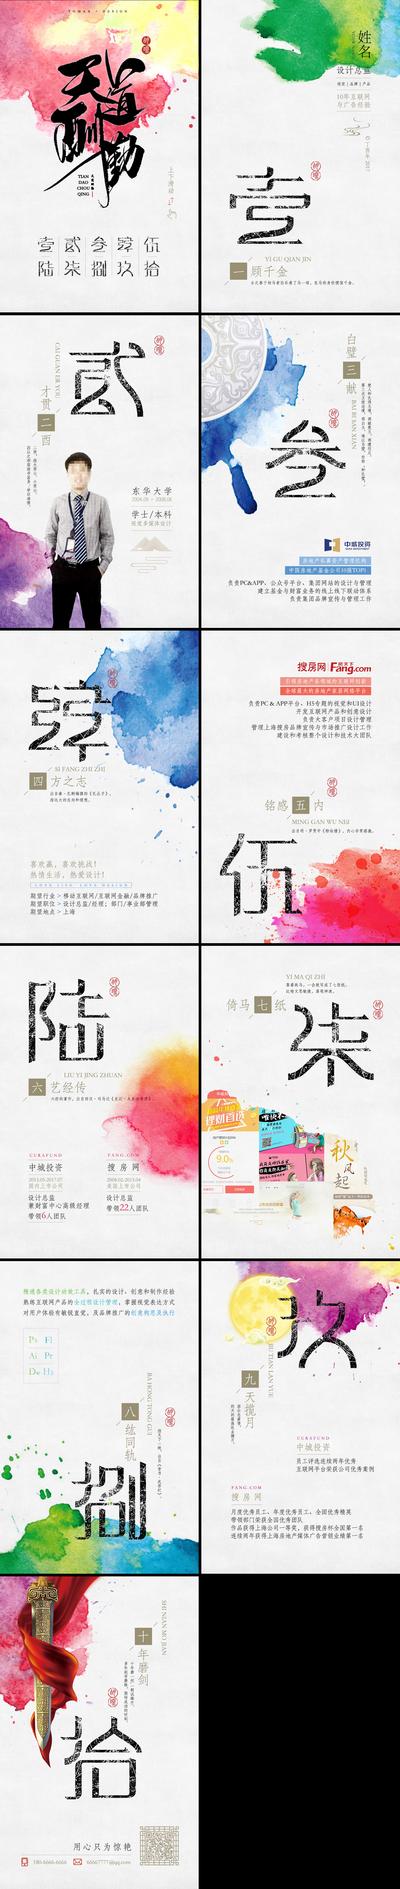 南门网 海报 简历 中国风 水墨 粉彩 水彩 喷墨 数字 H5 创意 简洁 简约 大气 